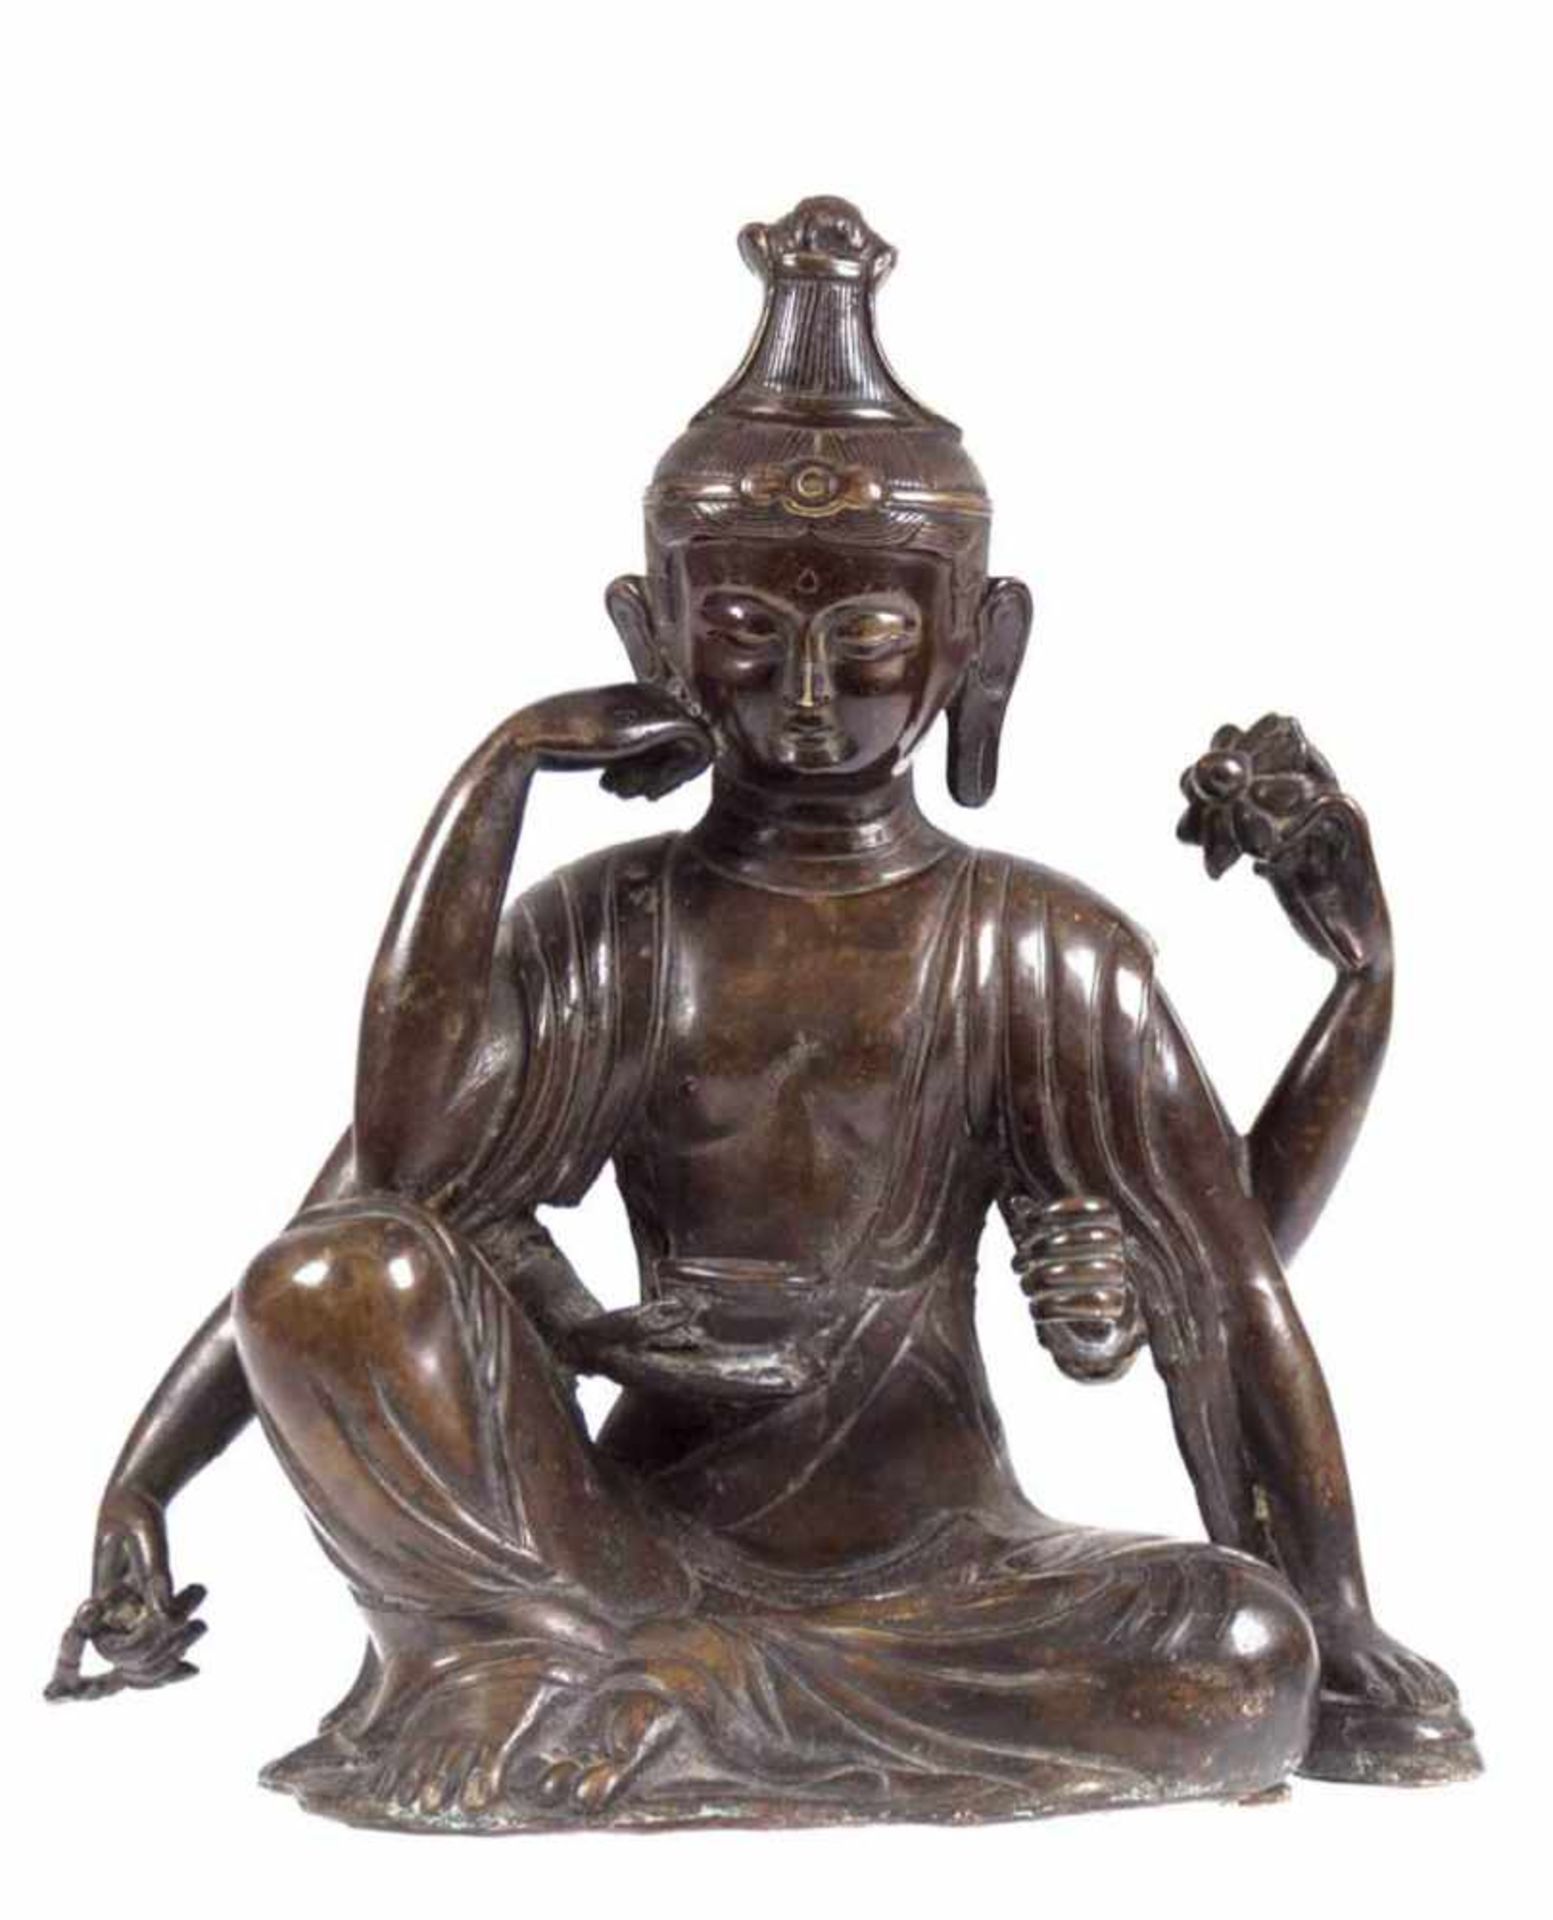 Skulptur "Avalokieschvara, der 6-armige Bodhisattva des Mitgefühls und derBarmherzigkeit", China/